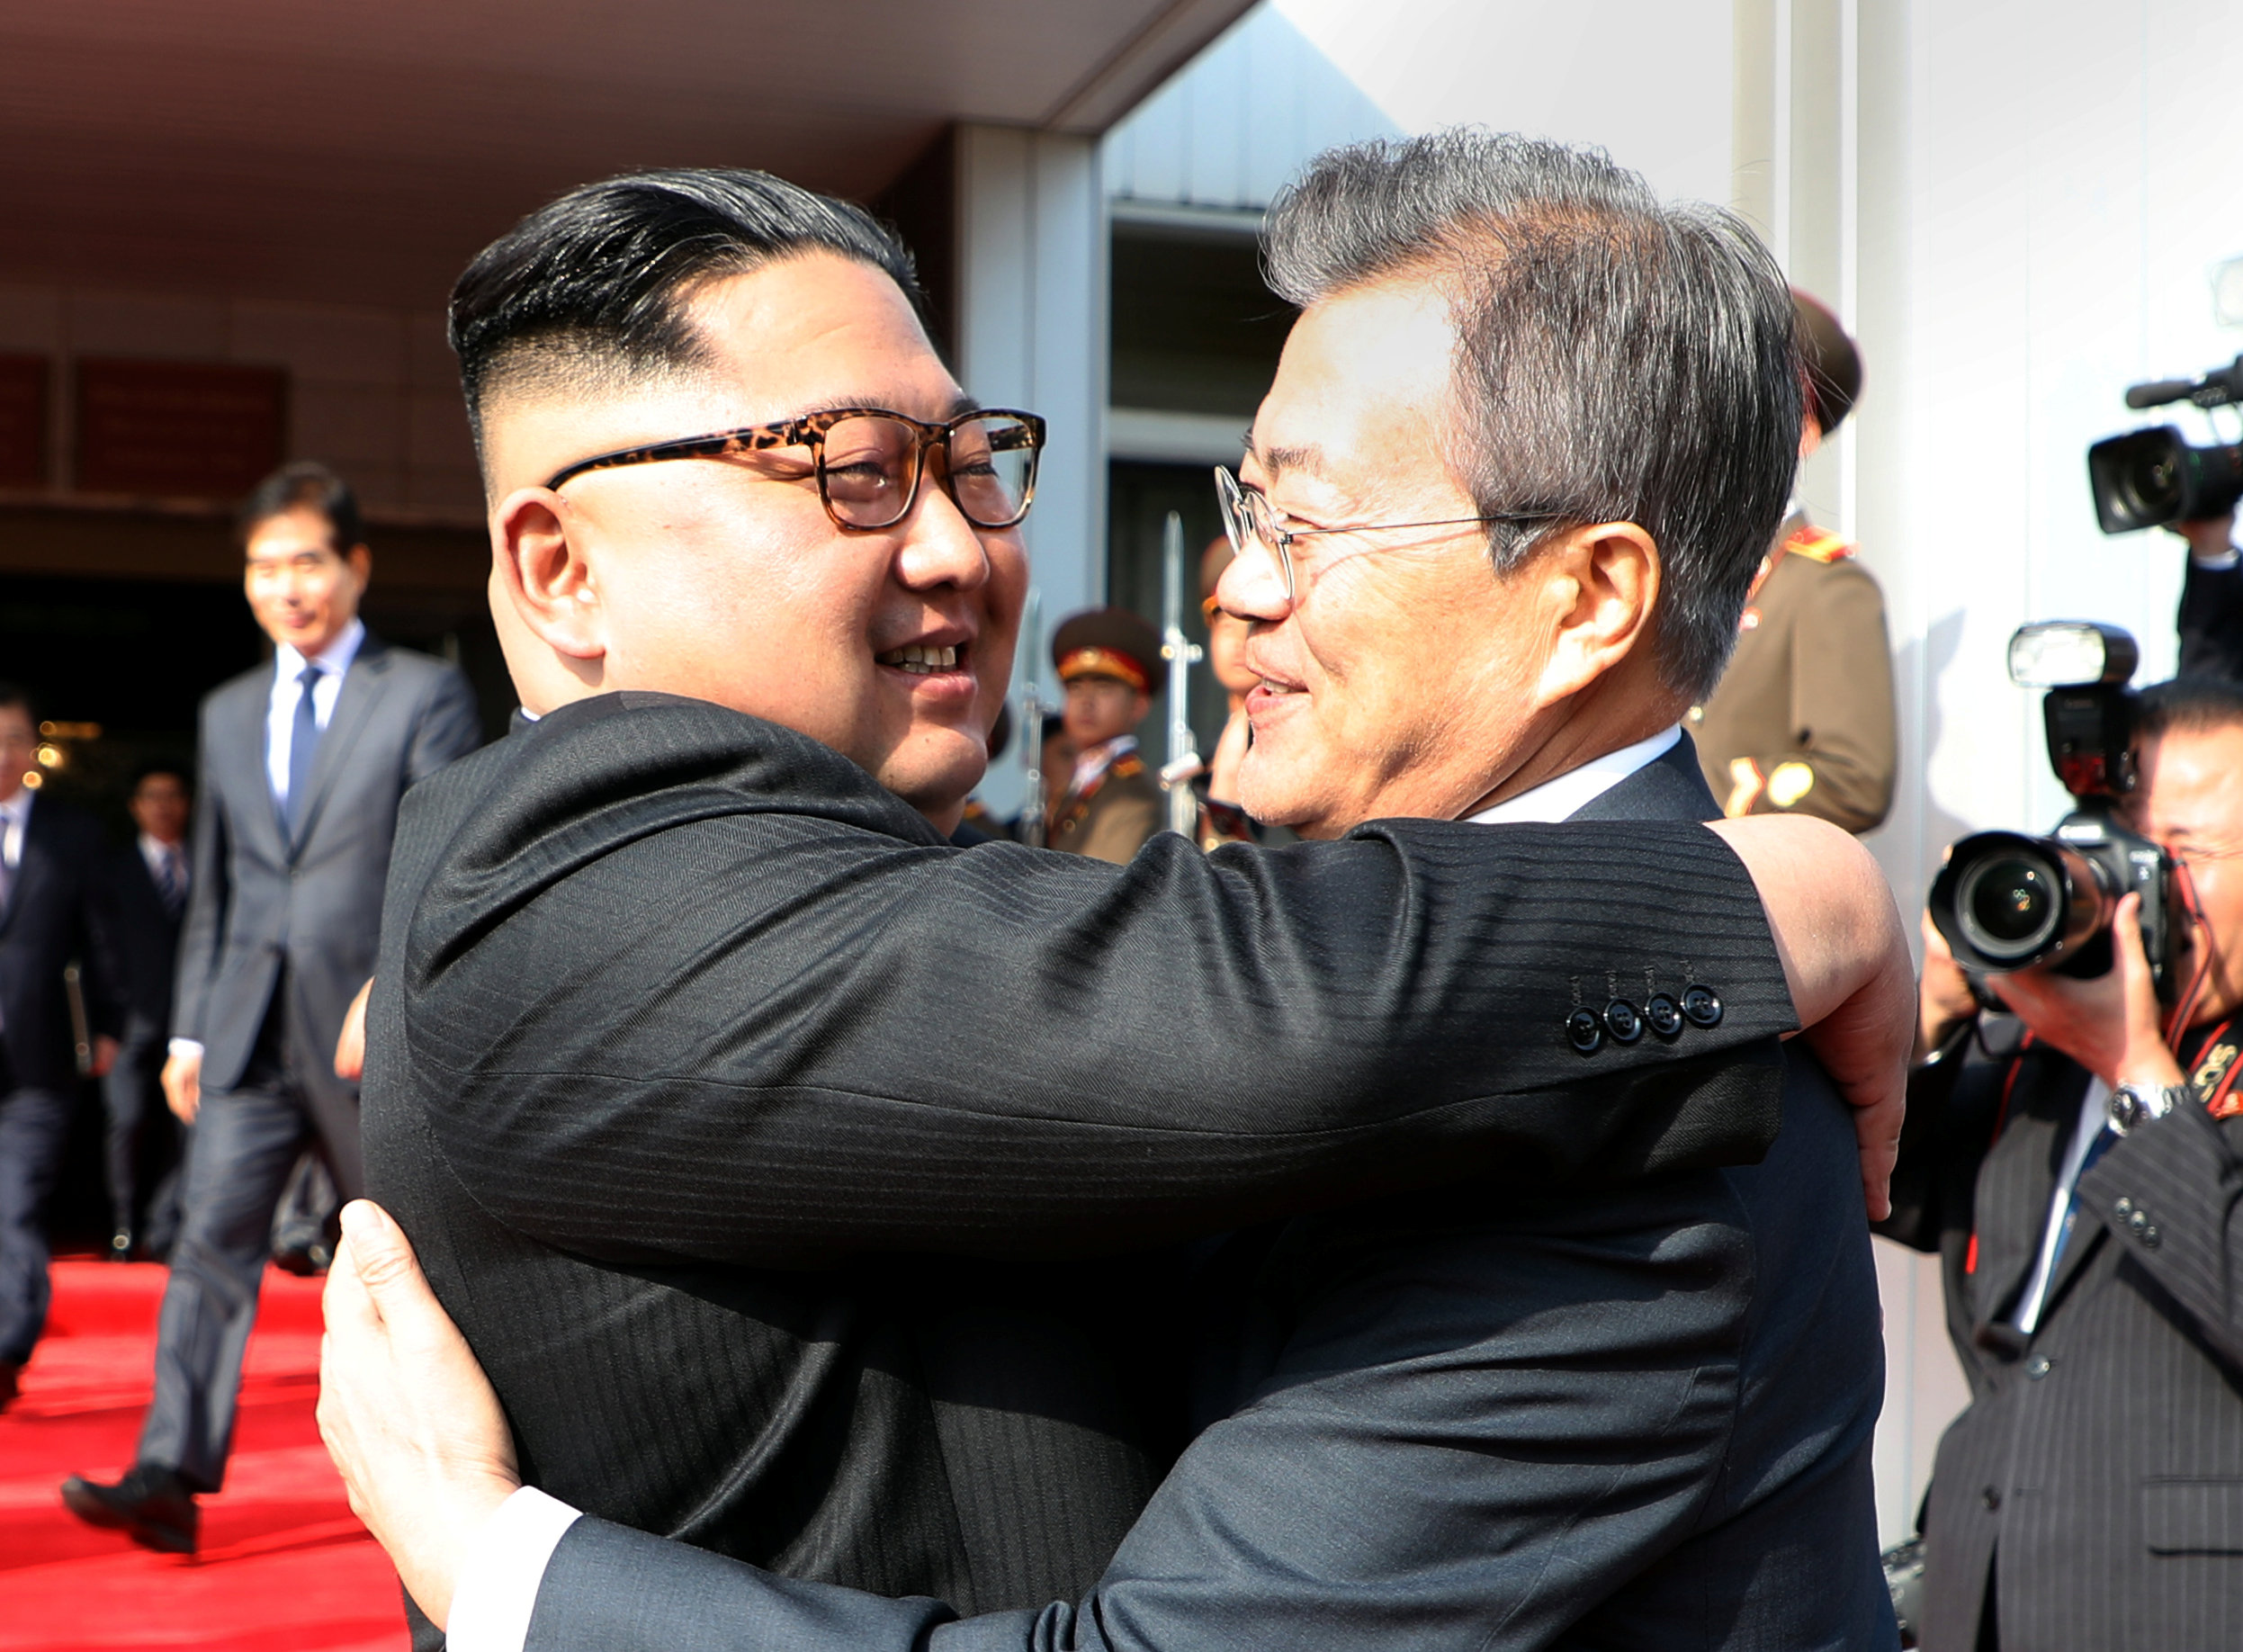 Líderes de las dos Coreas se reúnen por sorpresa para tratar cumbre con Trump